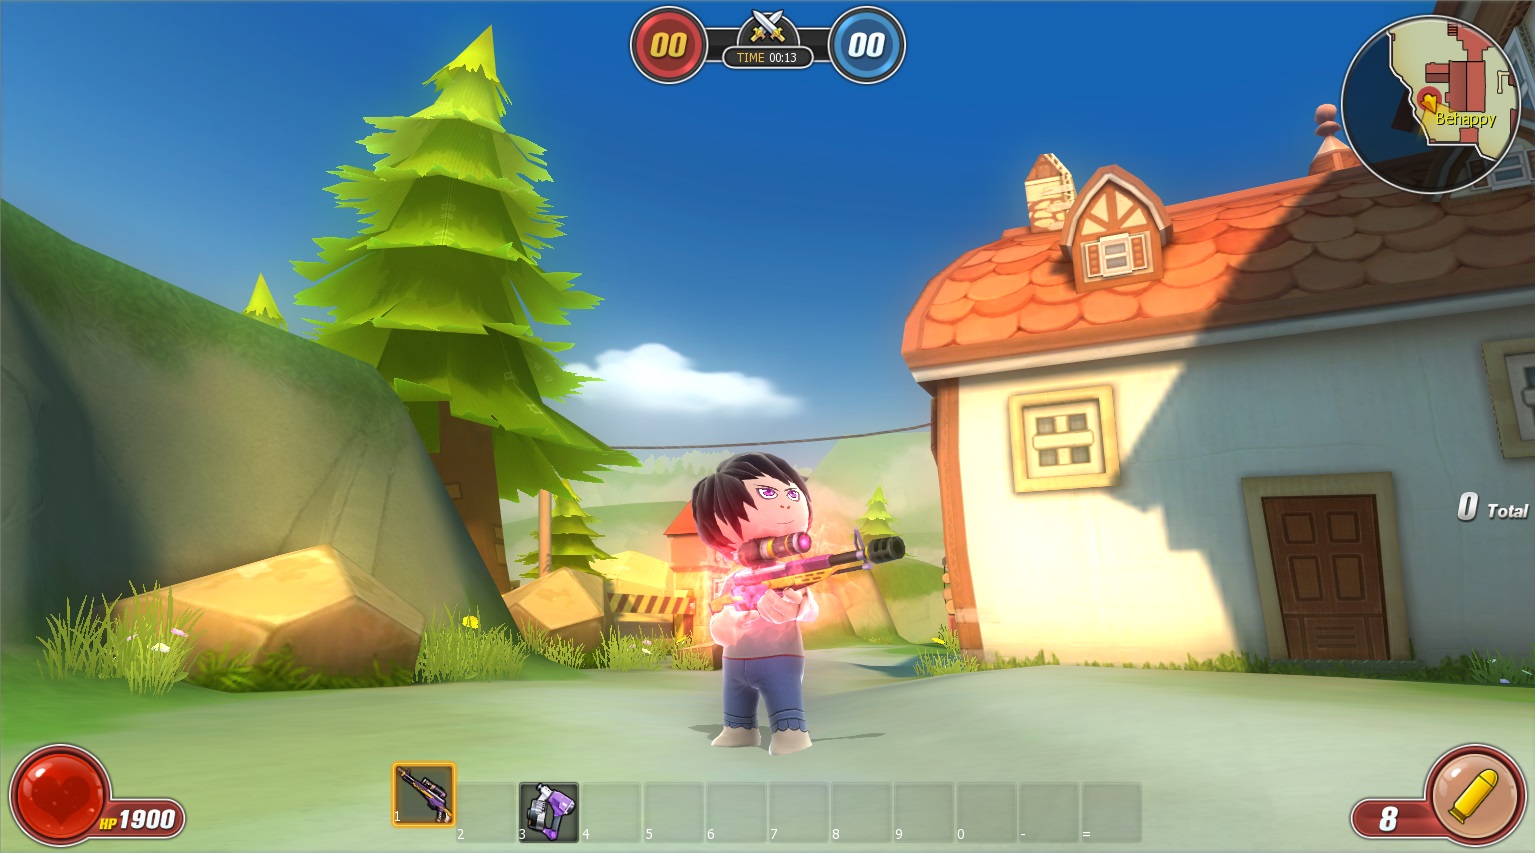 Hướng dẫn cách tải game Avatar Star online cho người mới chơi